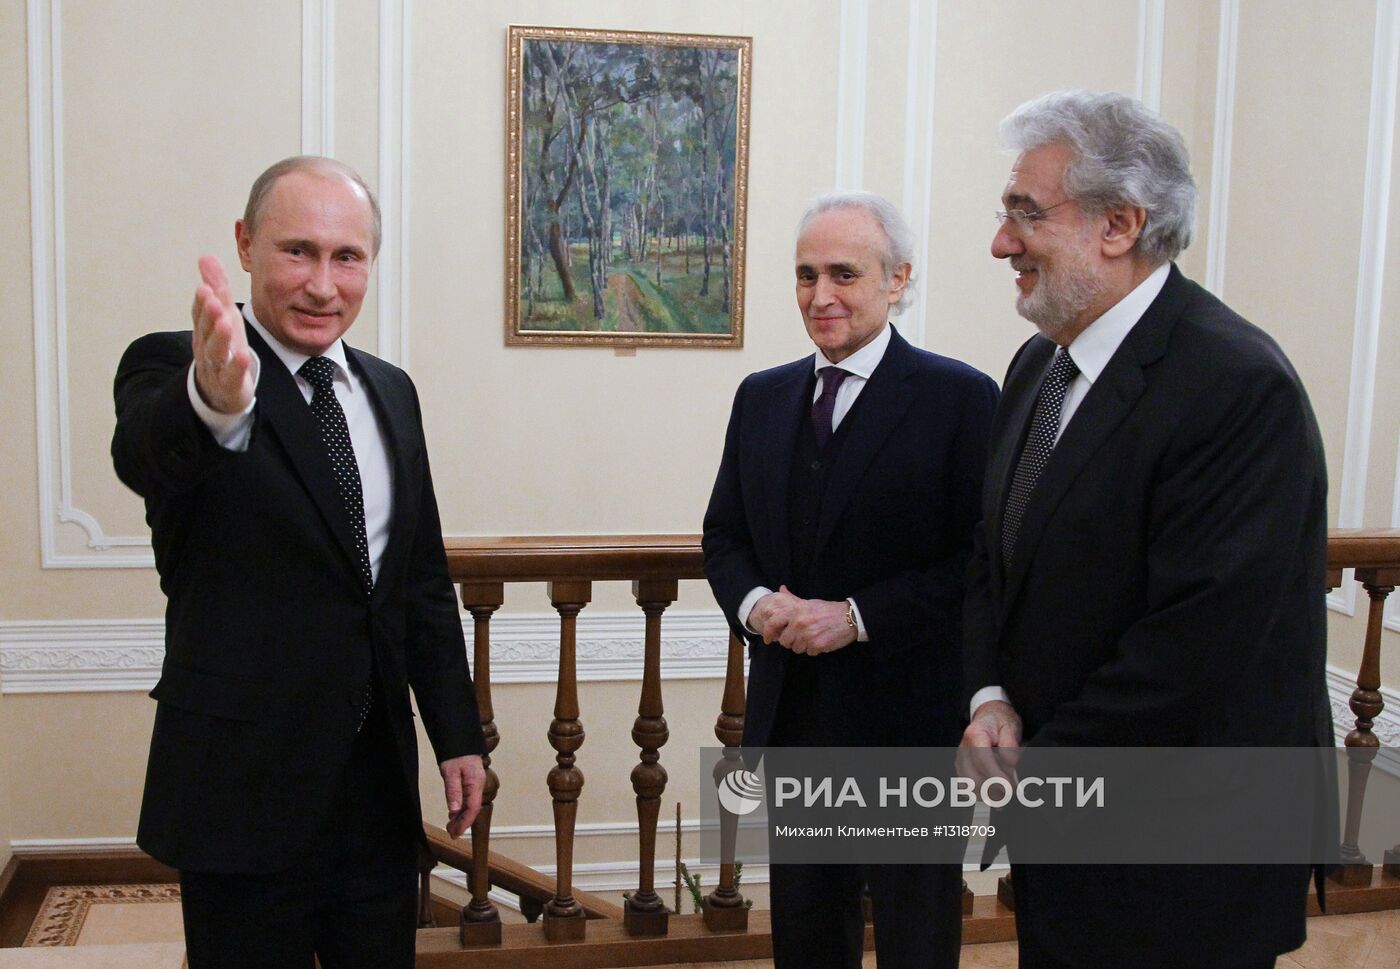 Встреча В.Путина с Х.Каррерасом и П.Доминго в Ново-Огарево